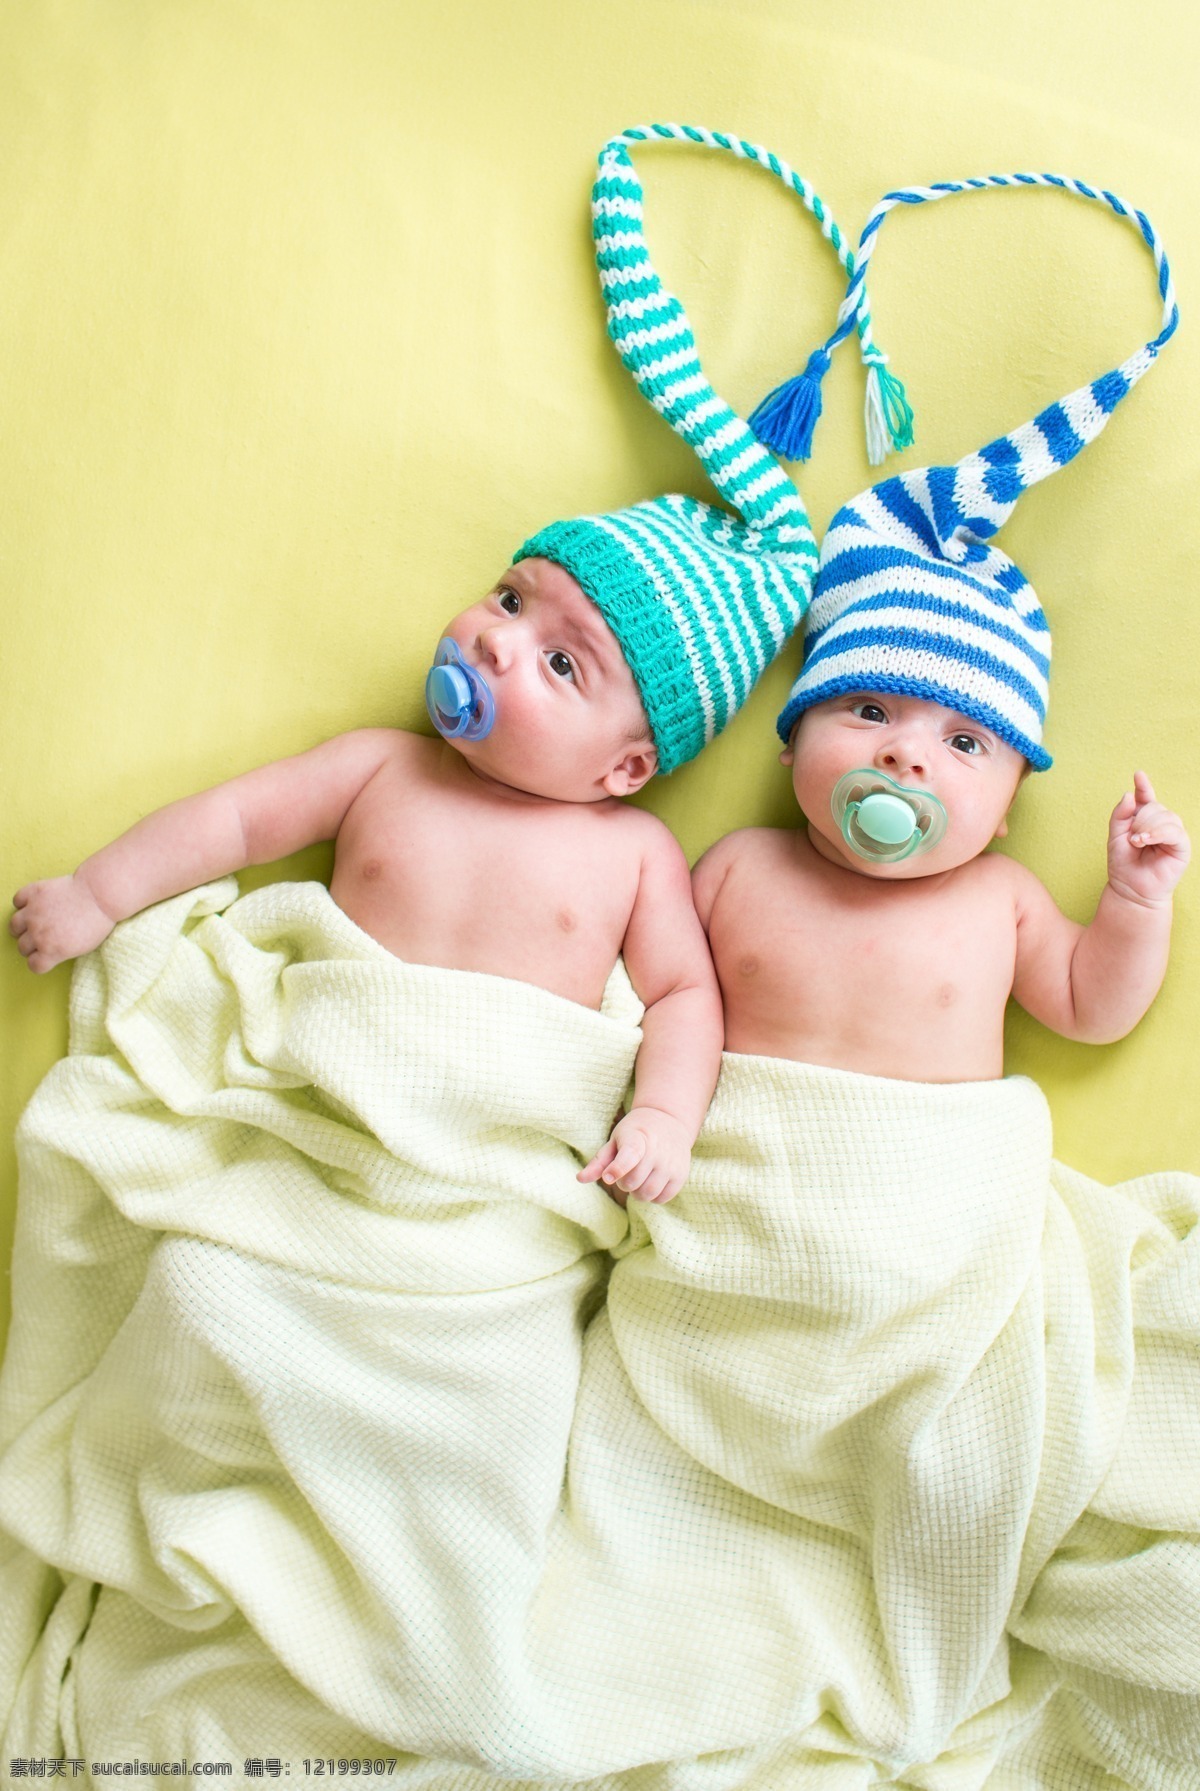 含 奶嘴 双胞胎 婴儿 可爱 帽子 人物摄影 儿童图片 人物图片